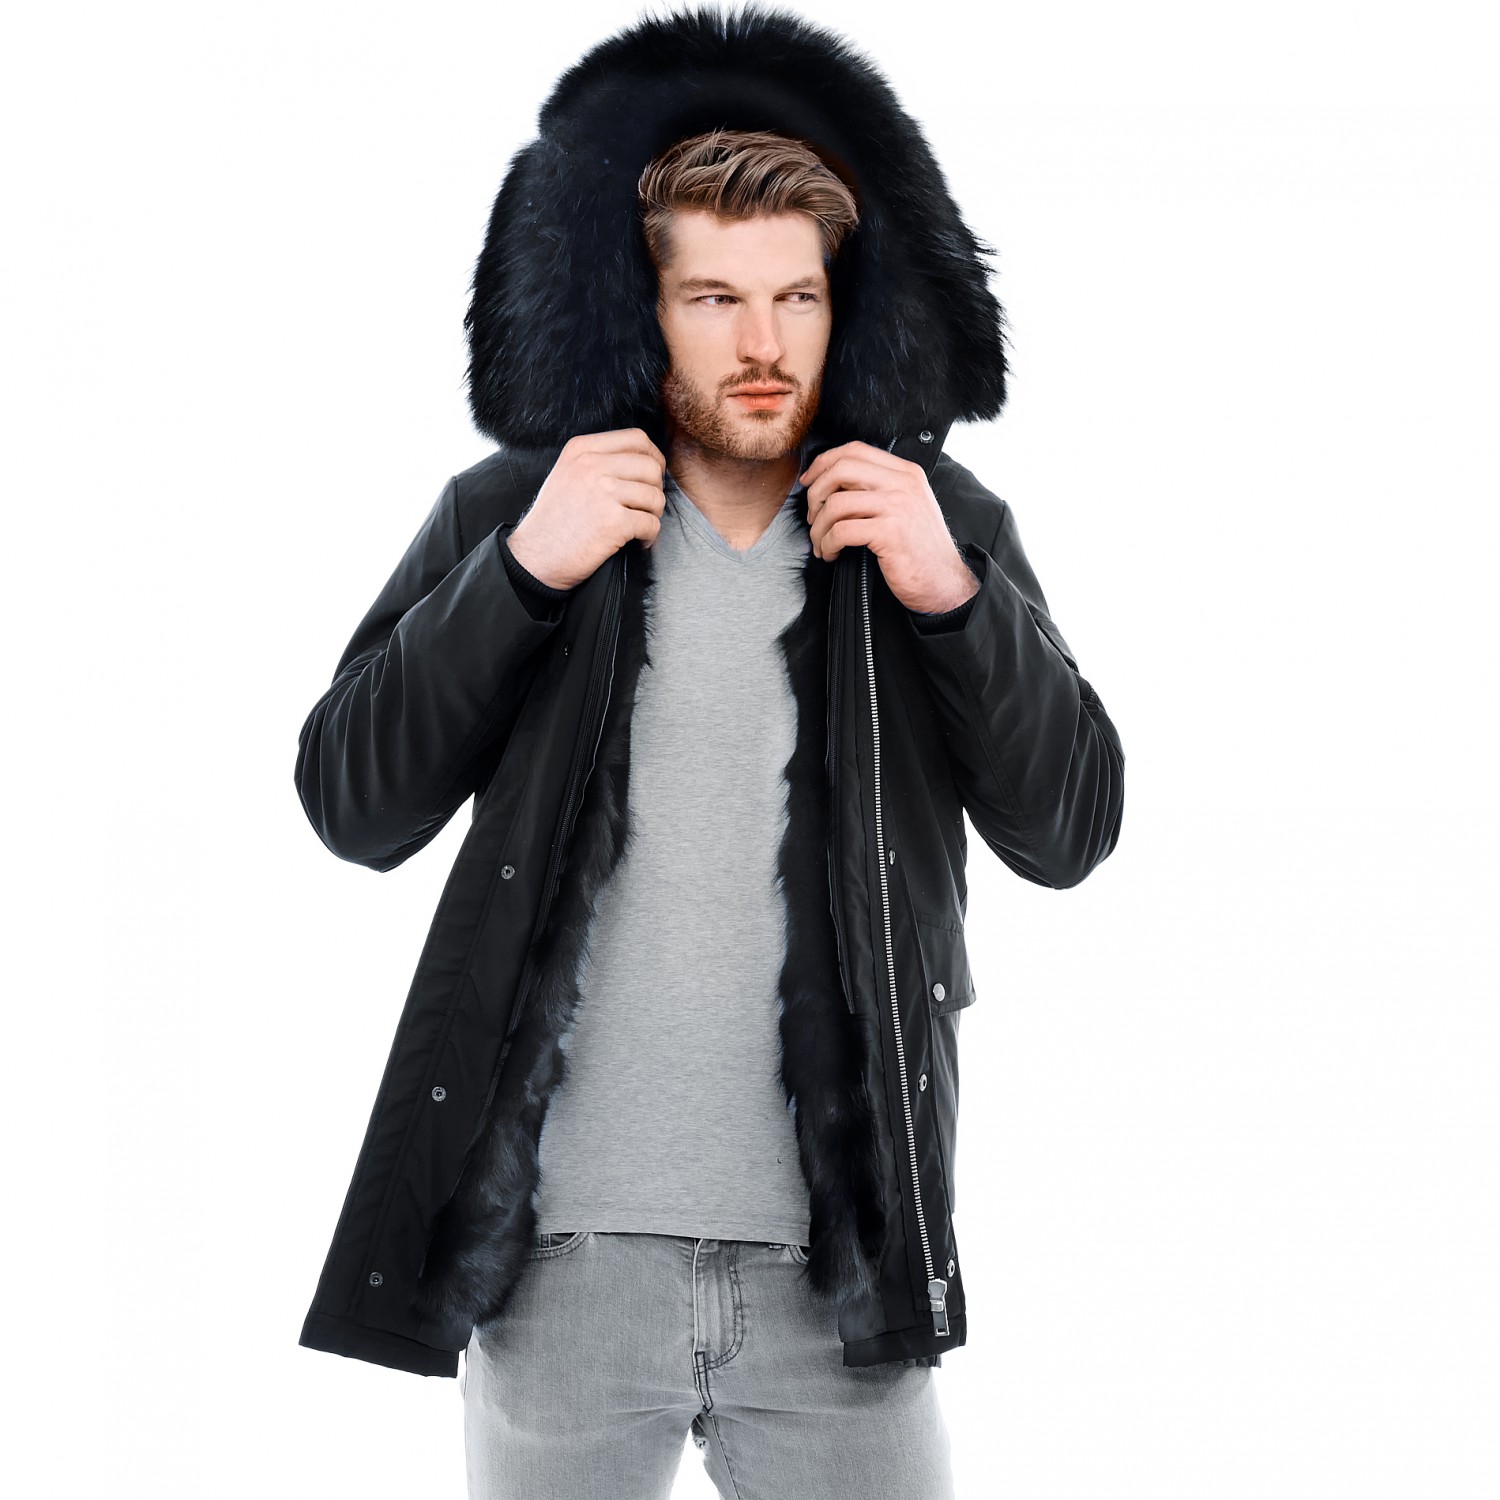 BIKETAFUWY Mens Winter Coats Plush Fleece Hoodie Warm Thicken Faux Fur Lined Outwear Outdoor Thermal Overcoat Jackets